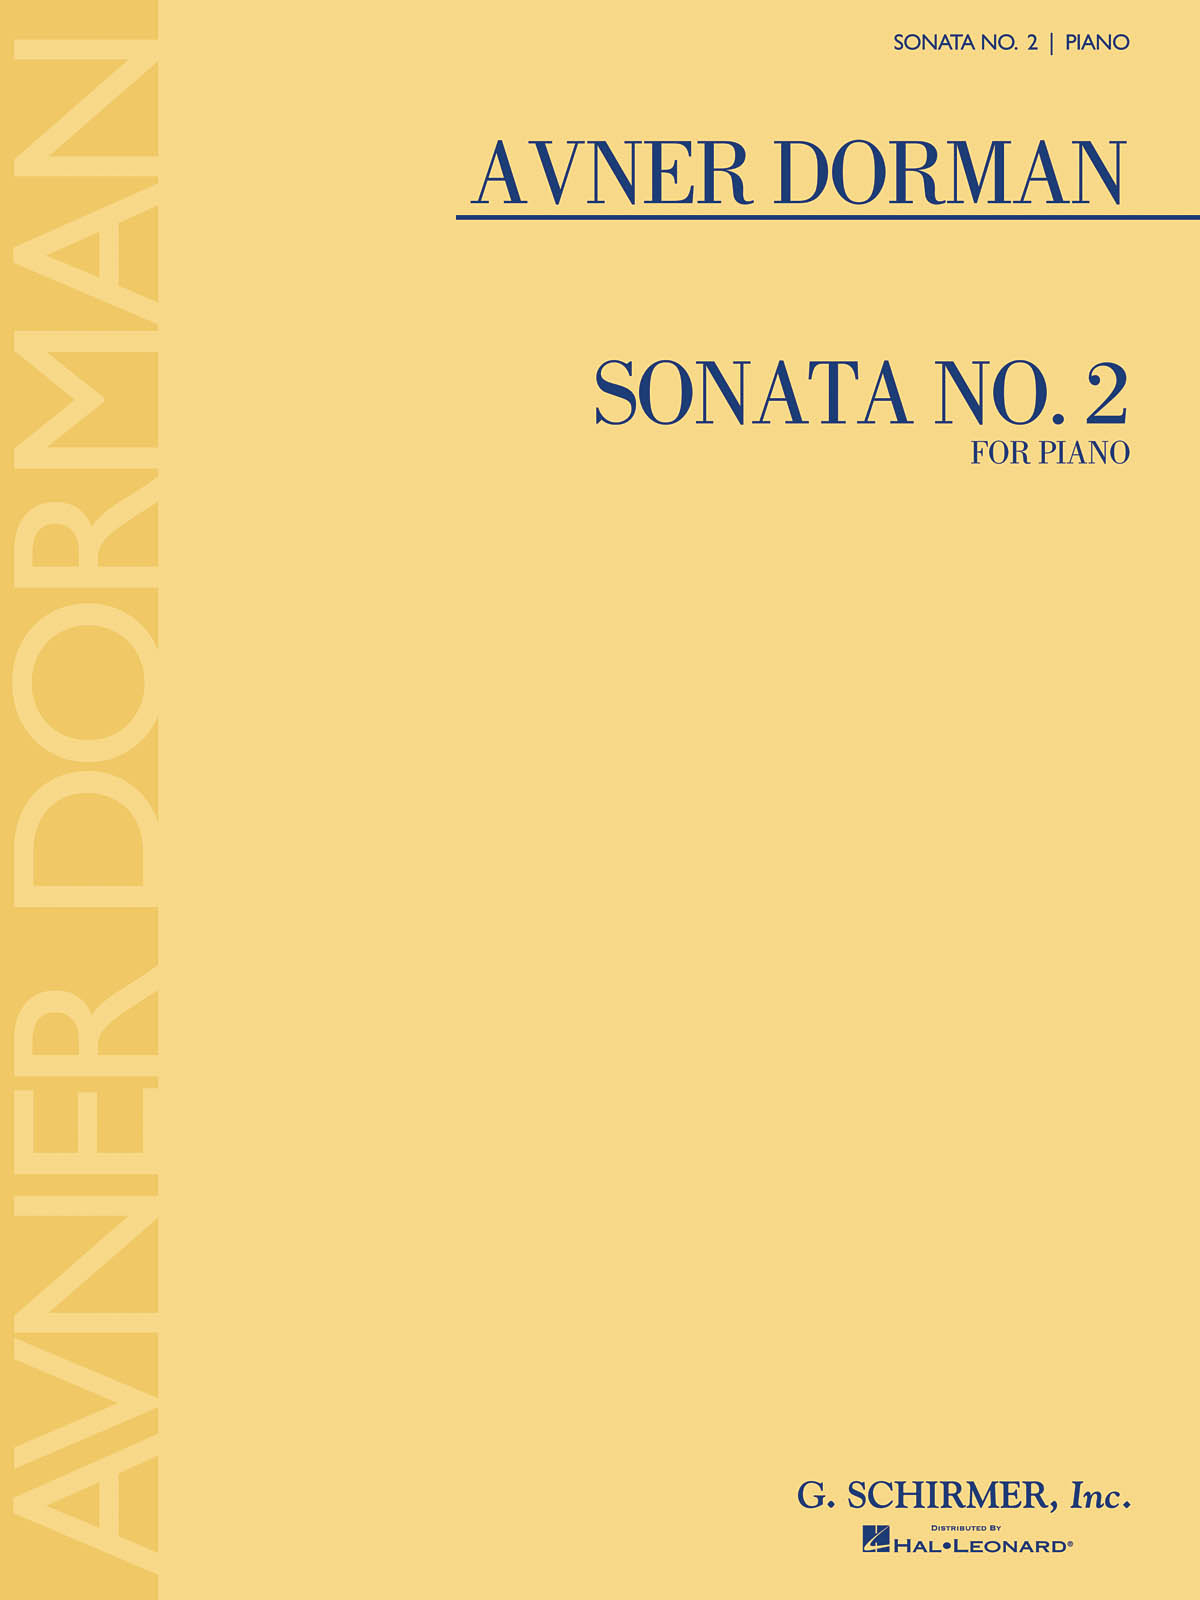 Avner Dorman: Sonata No. 2